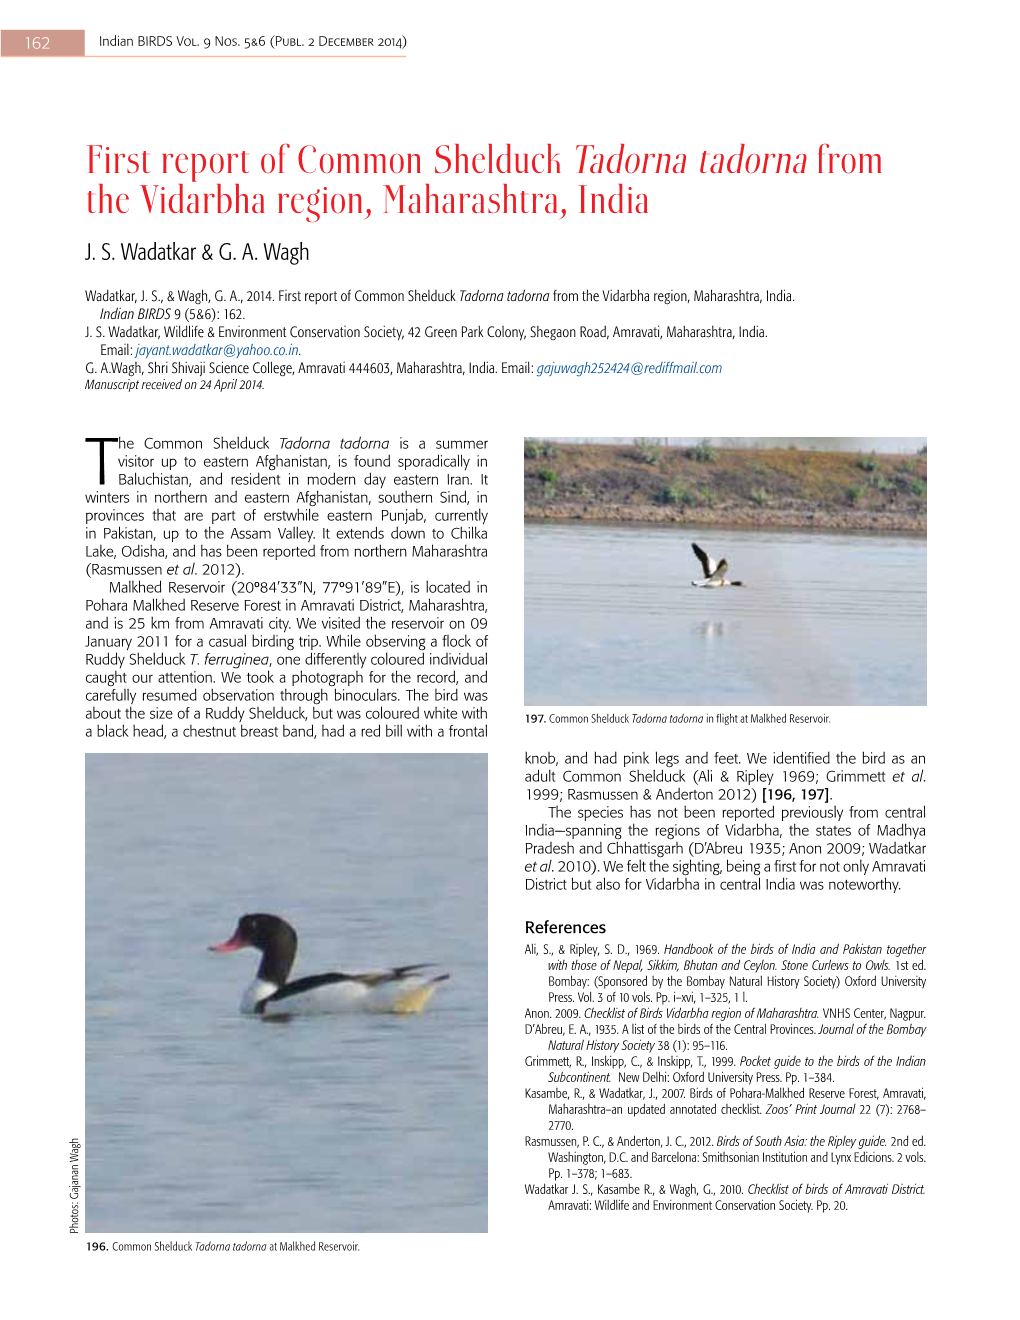 First Report of Common Shelduck Tadorna Tadorna from the Vidarbha Region, Maharashtra, India J